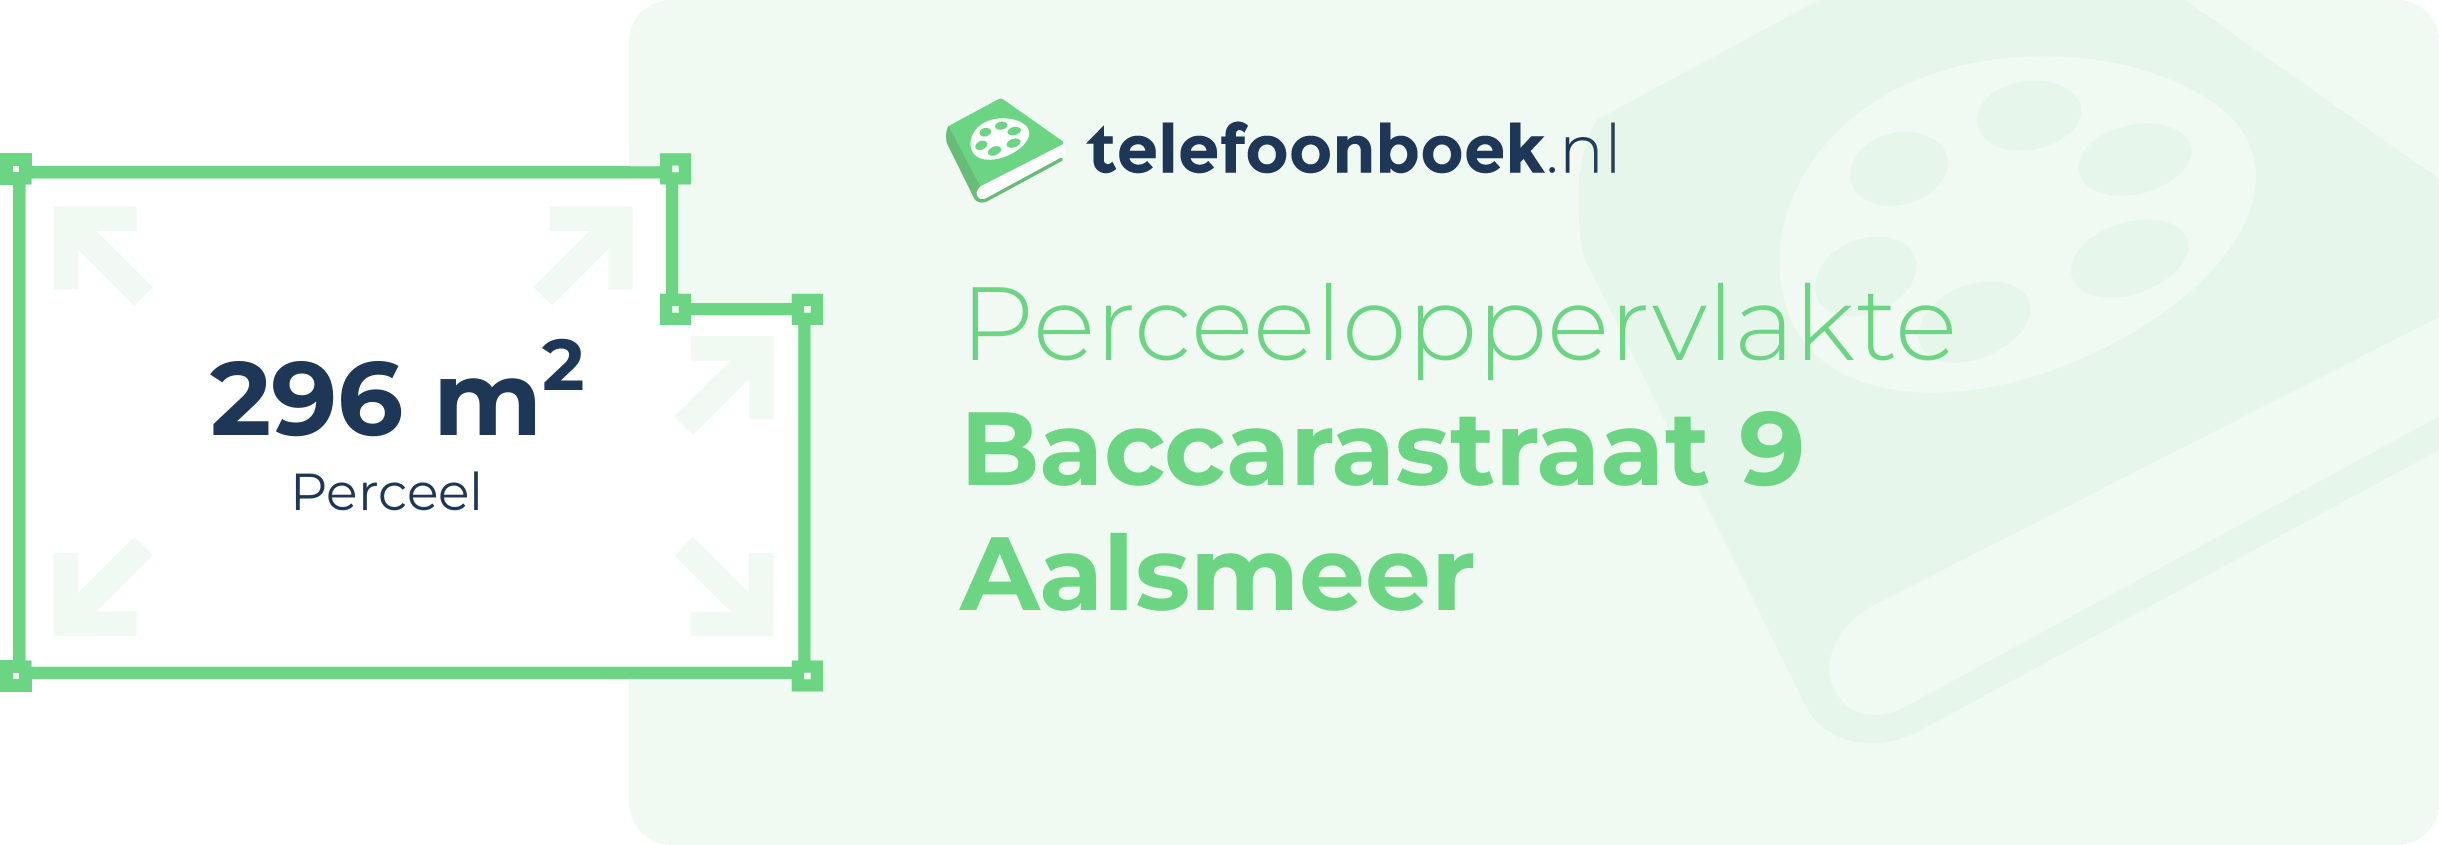 Perceeloppervlakte Baccarastraat 9 Aalsmeer